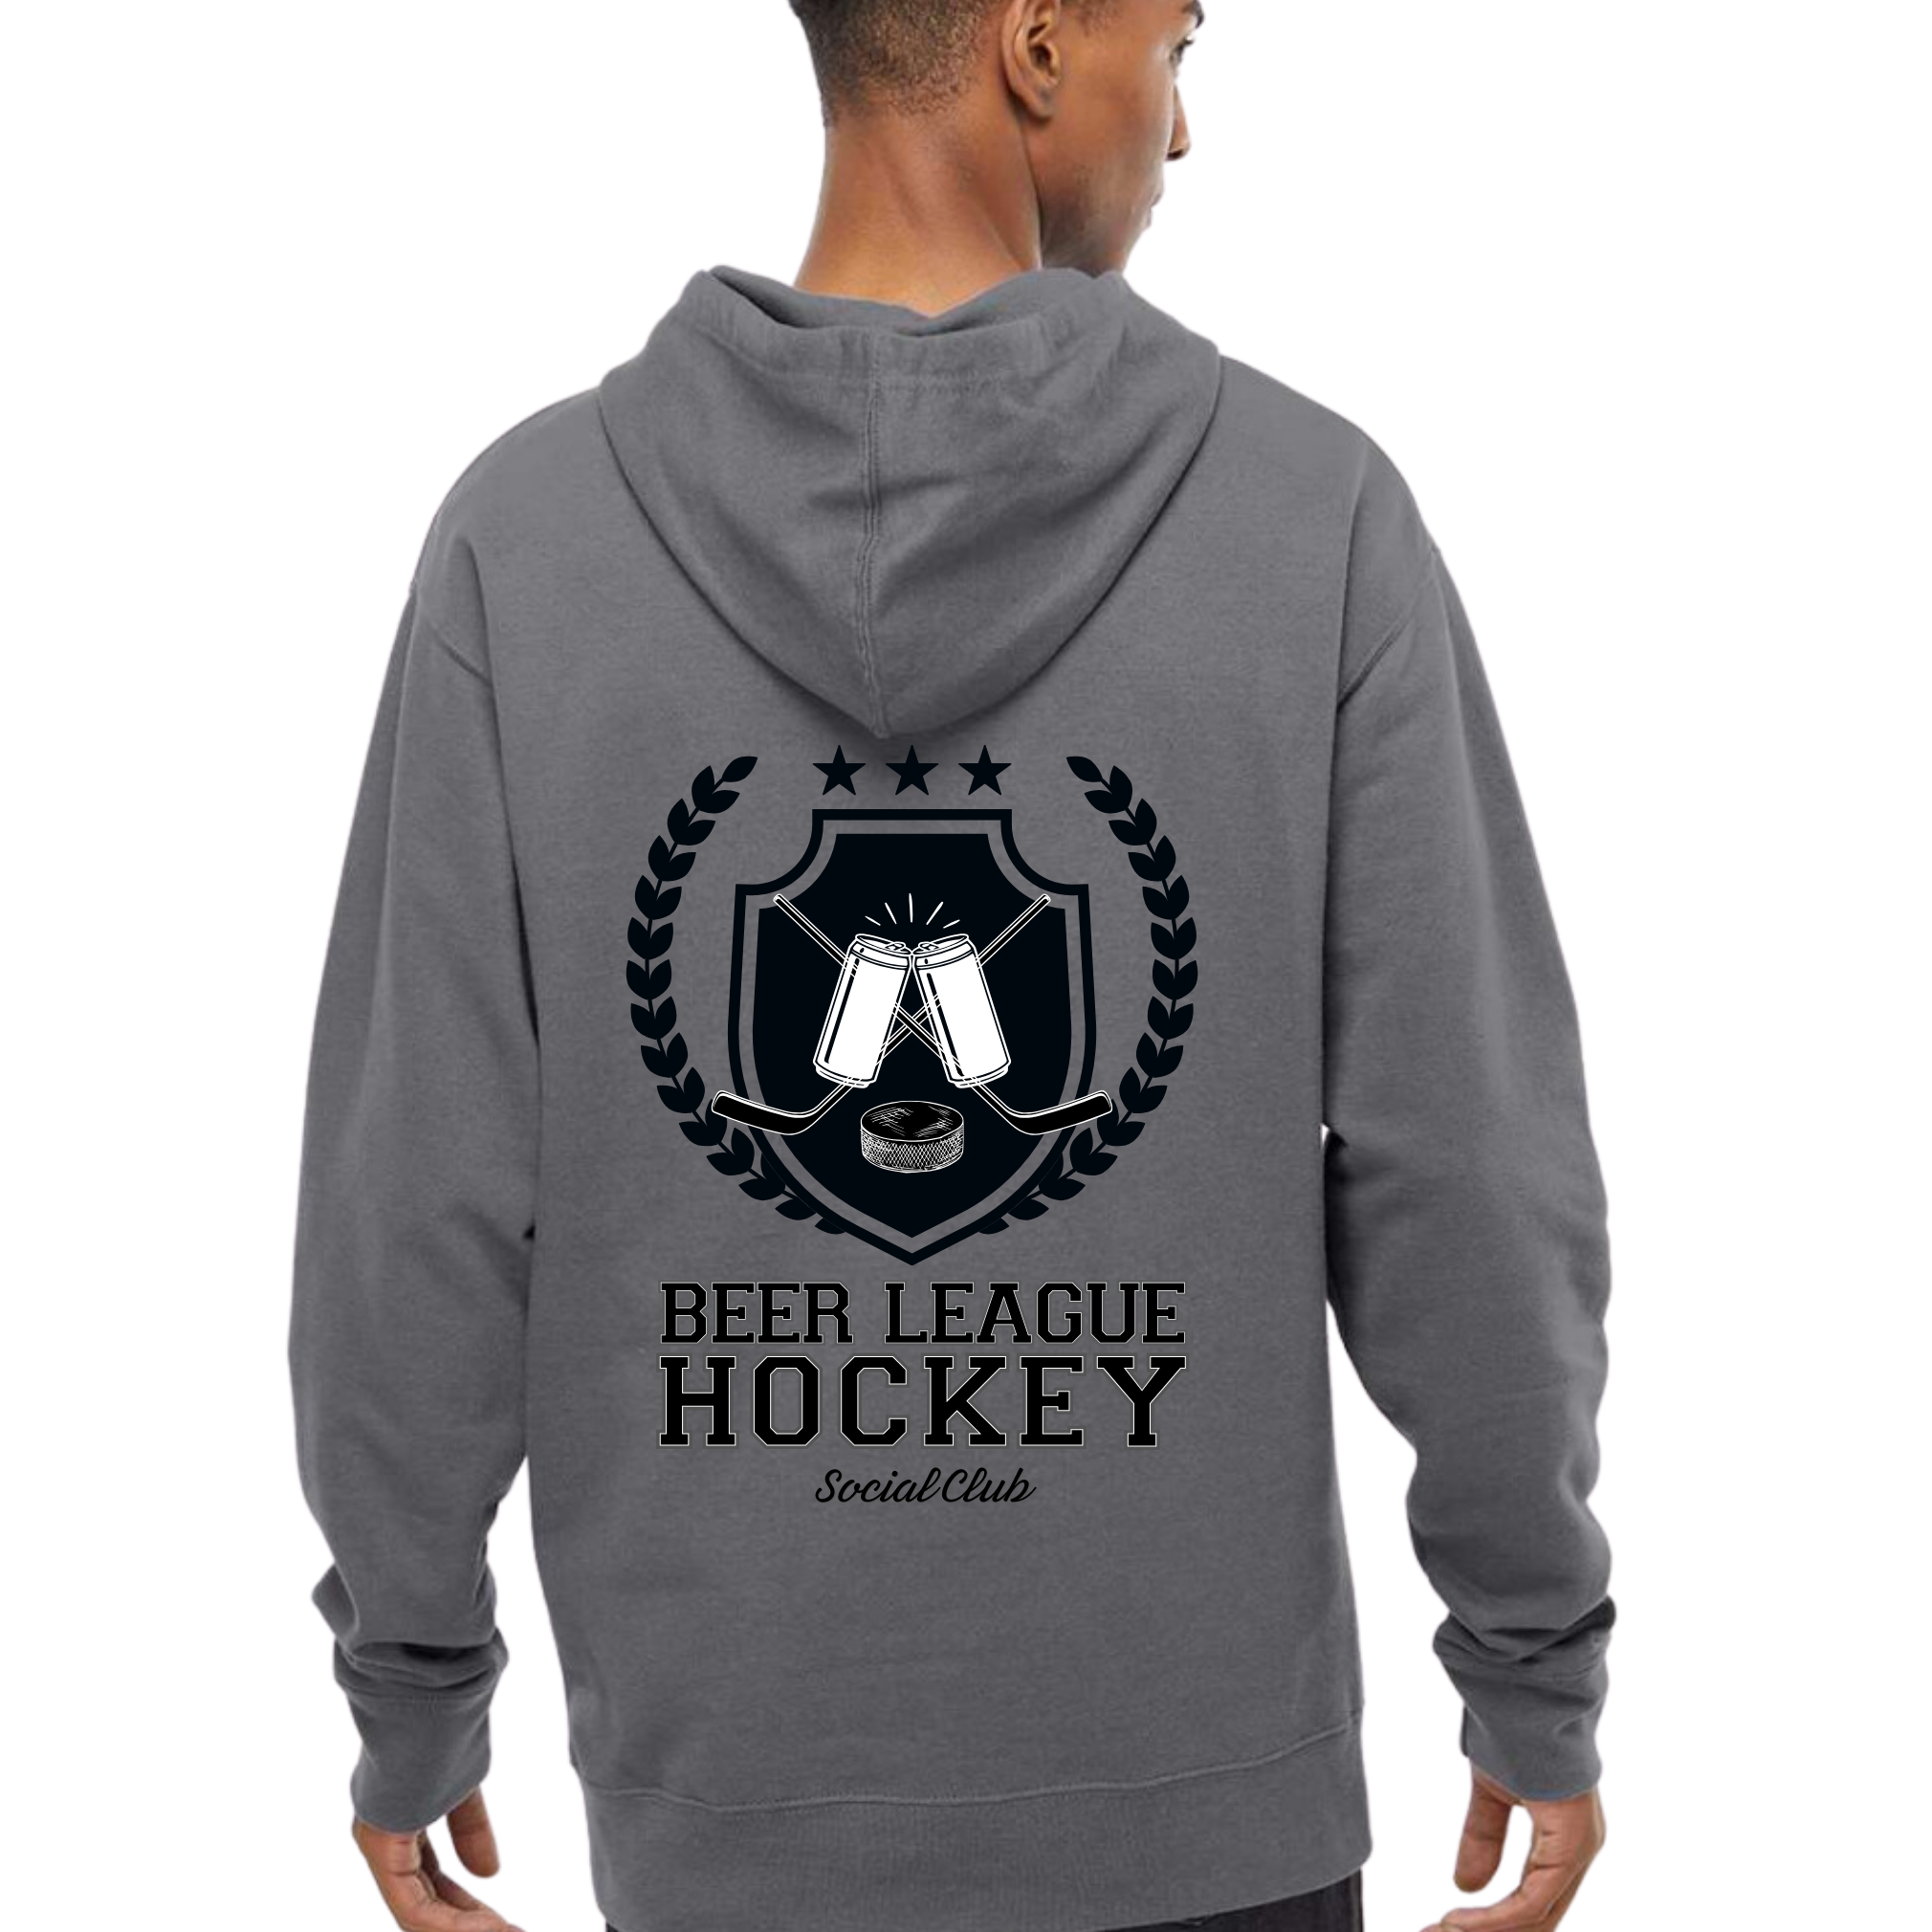 Beer League Hockey Social Club Hoodie